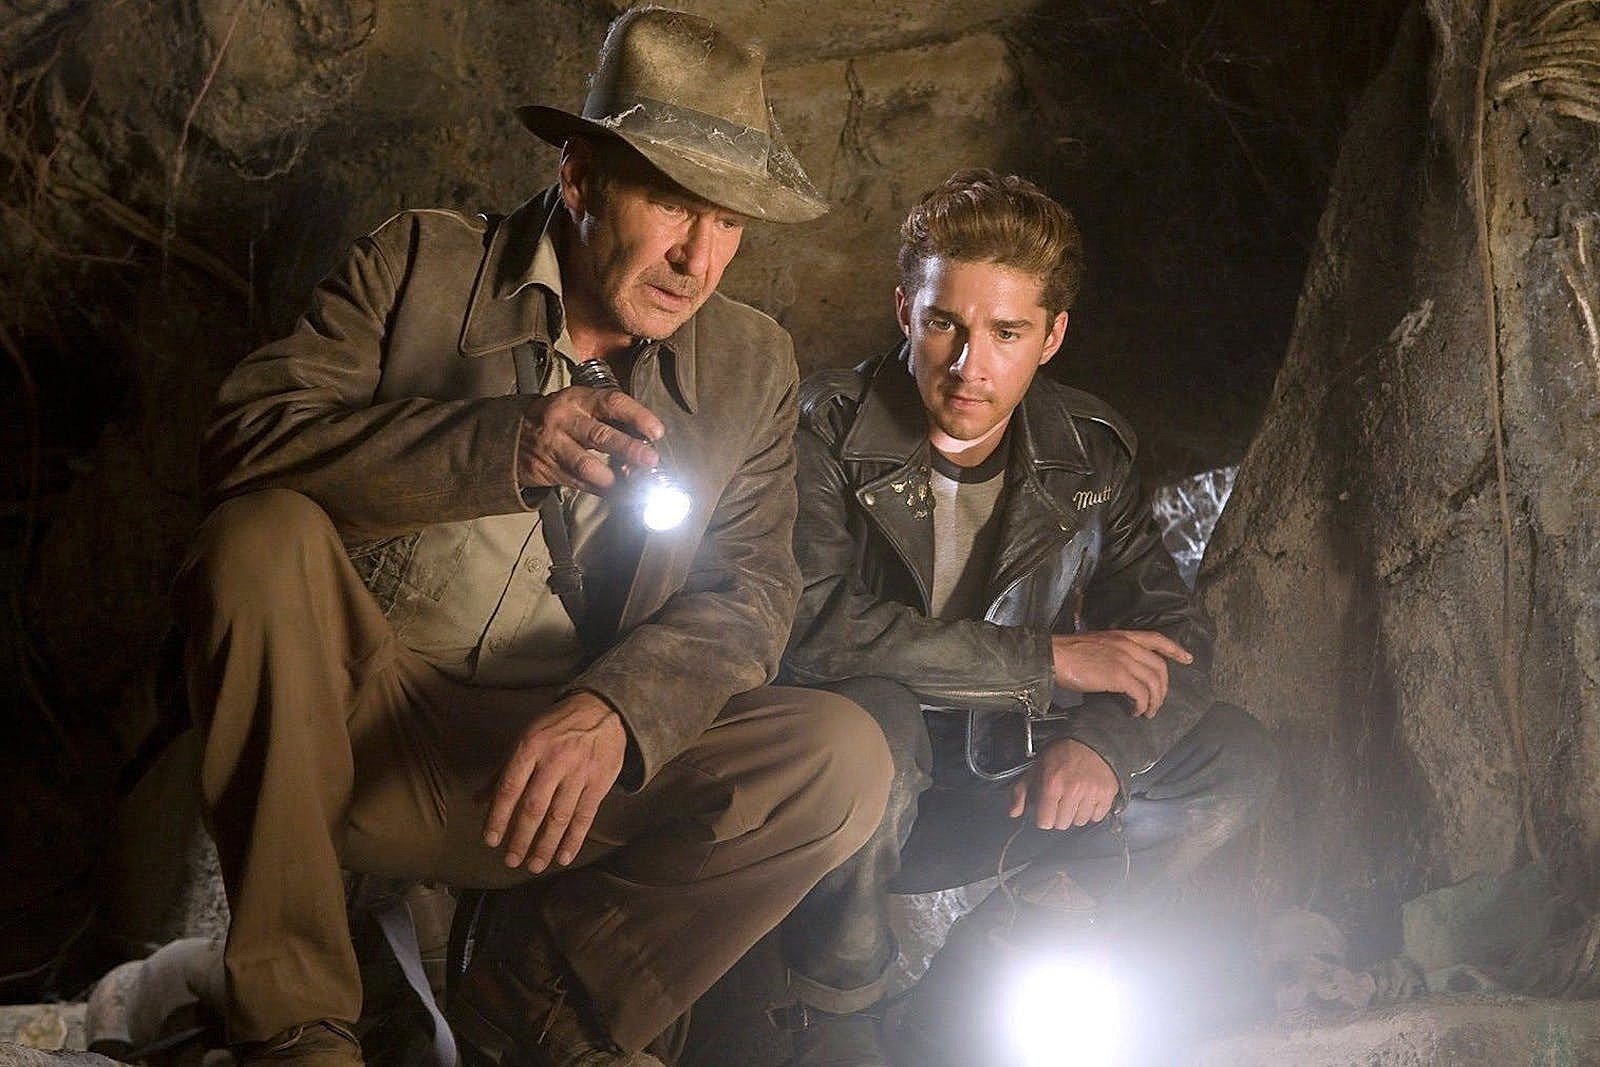 Indiana Jones et le Royaume du crâne de cristal : Pourquoi M. Night Shyamalan a abandonné le projet après avoir été approché pour le script ?